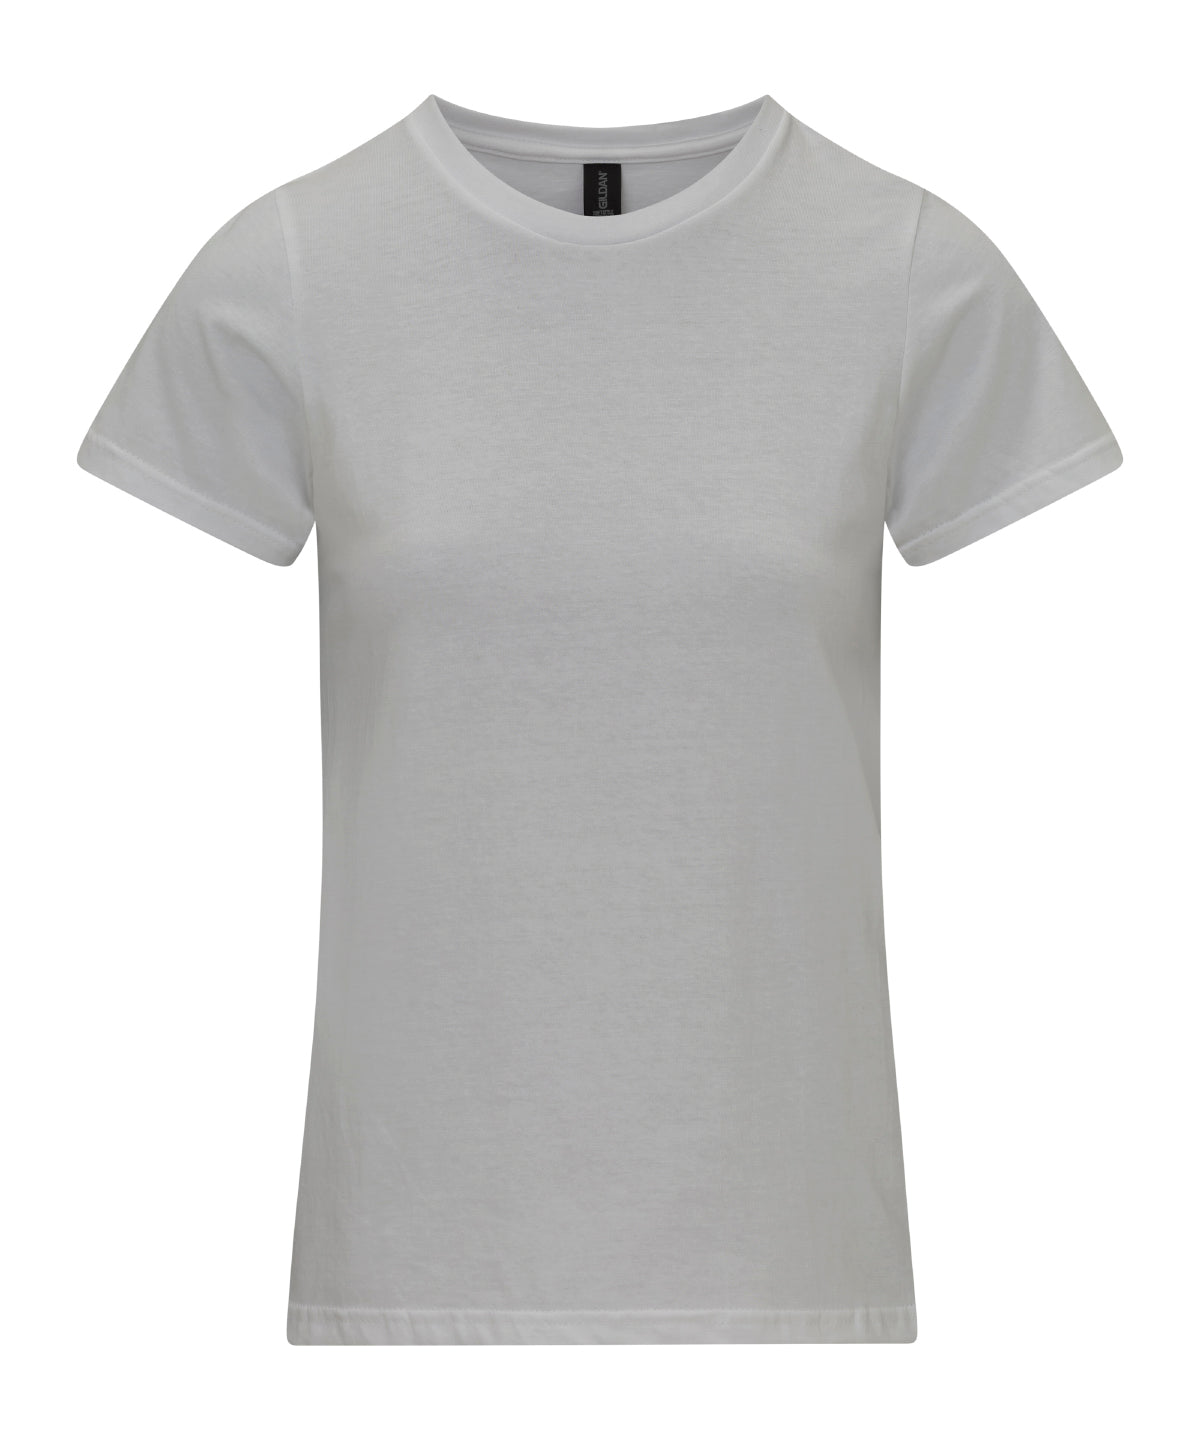 Gildan Softstyle midweight women’s t-shirt